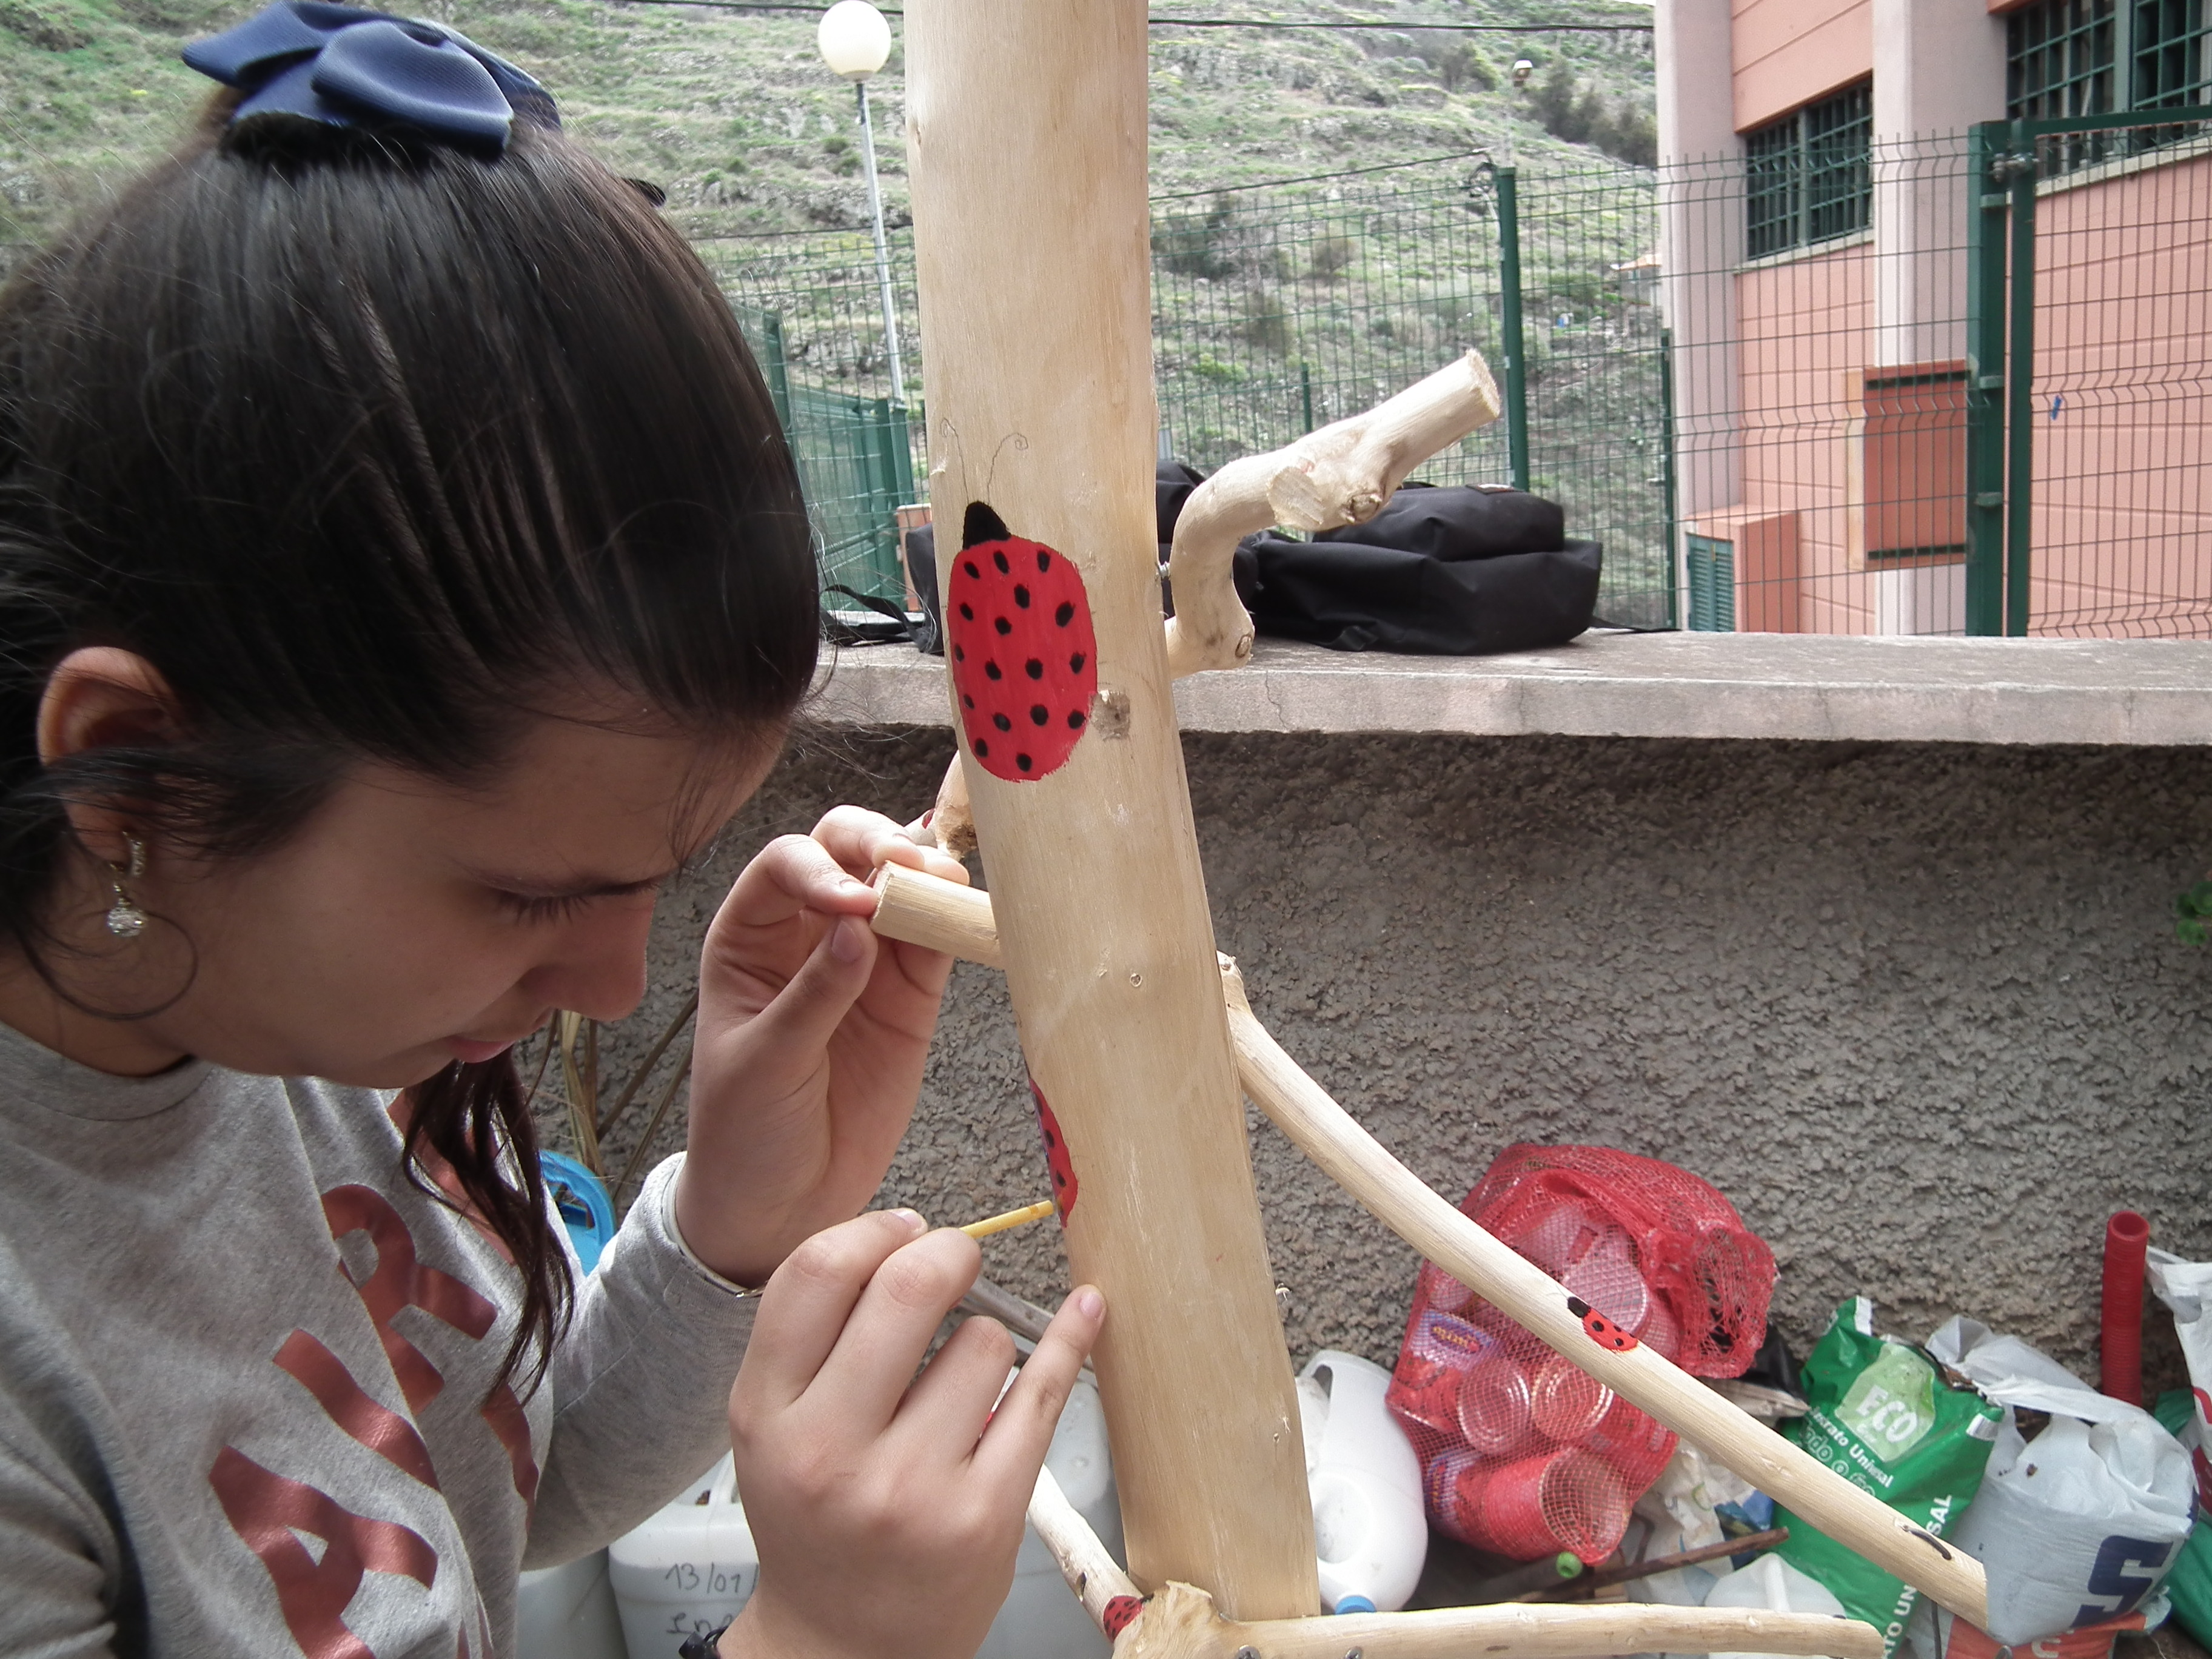 Uma das alunas pintando uma joaninha na estrutura de madeira.